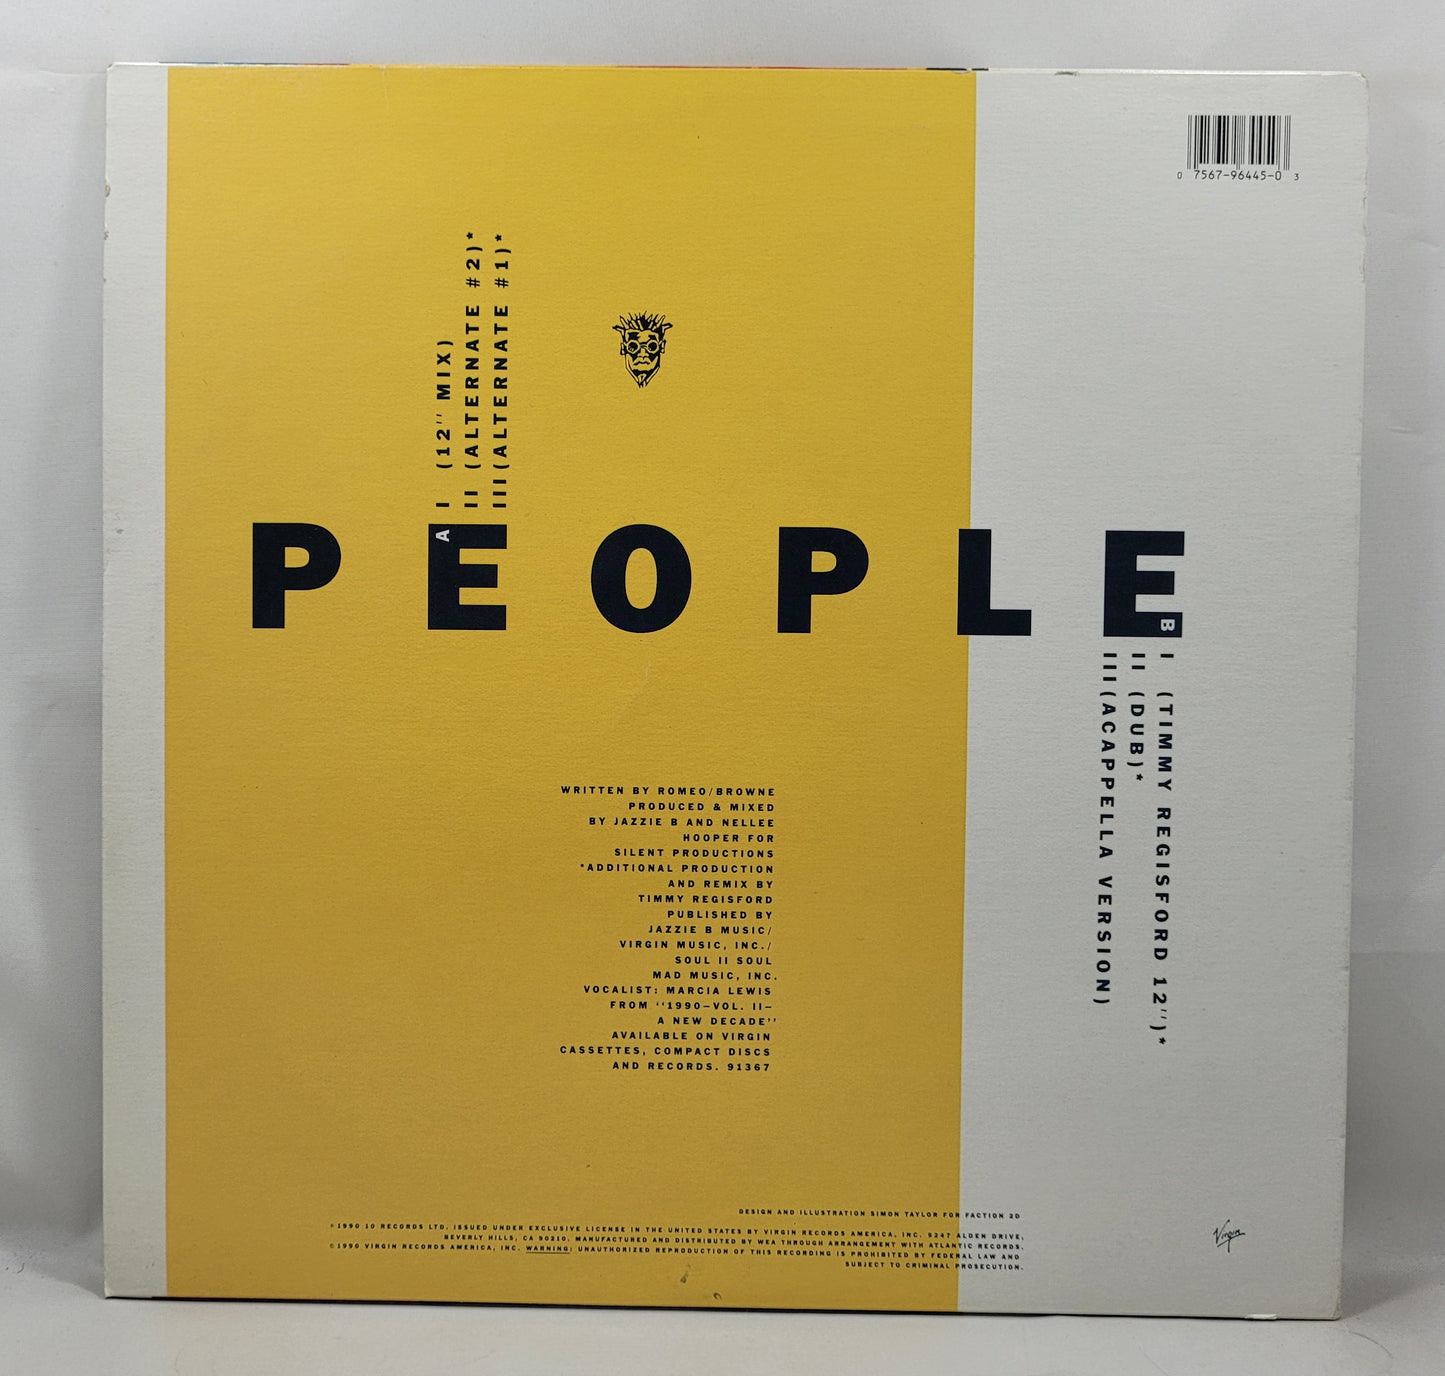 Soul II Soul - People [Vinyl Record 12" Single]